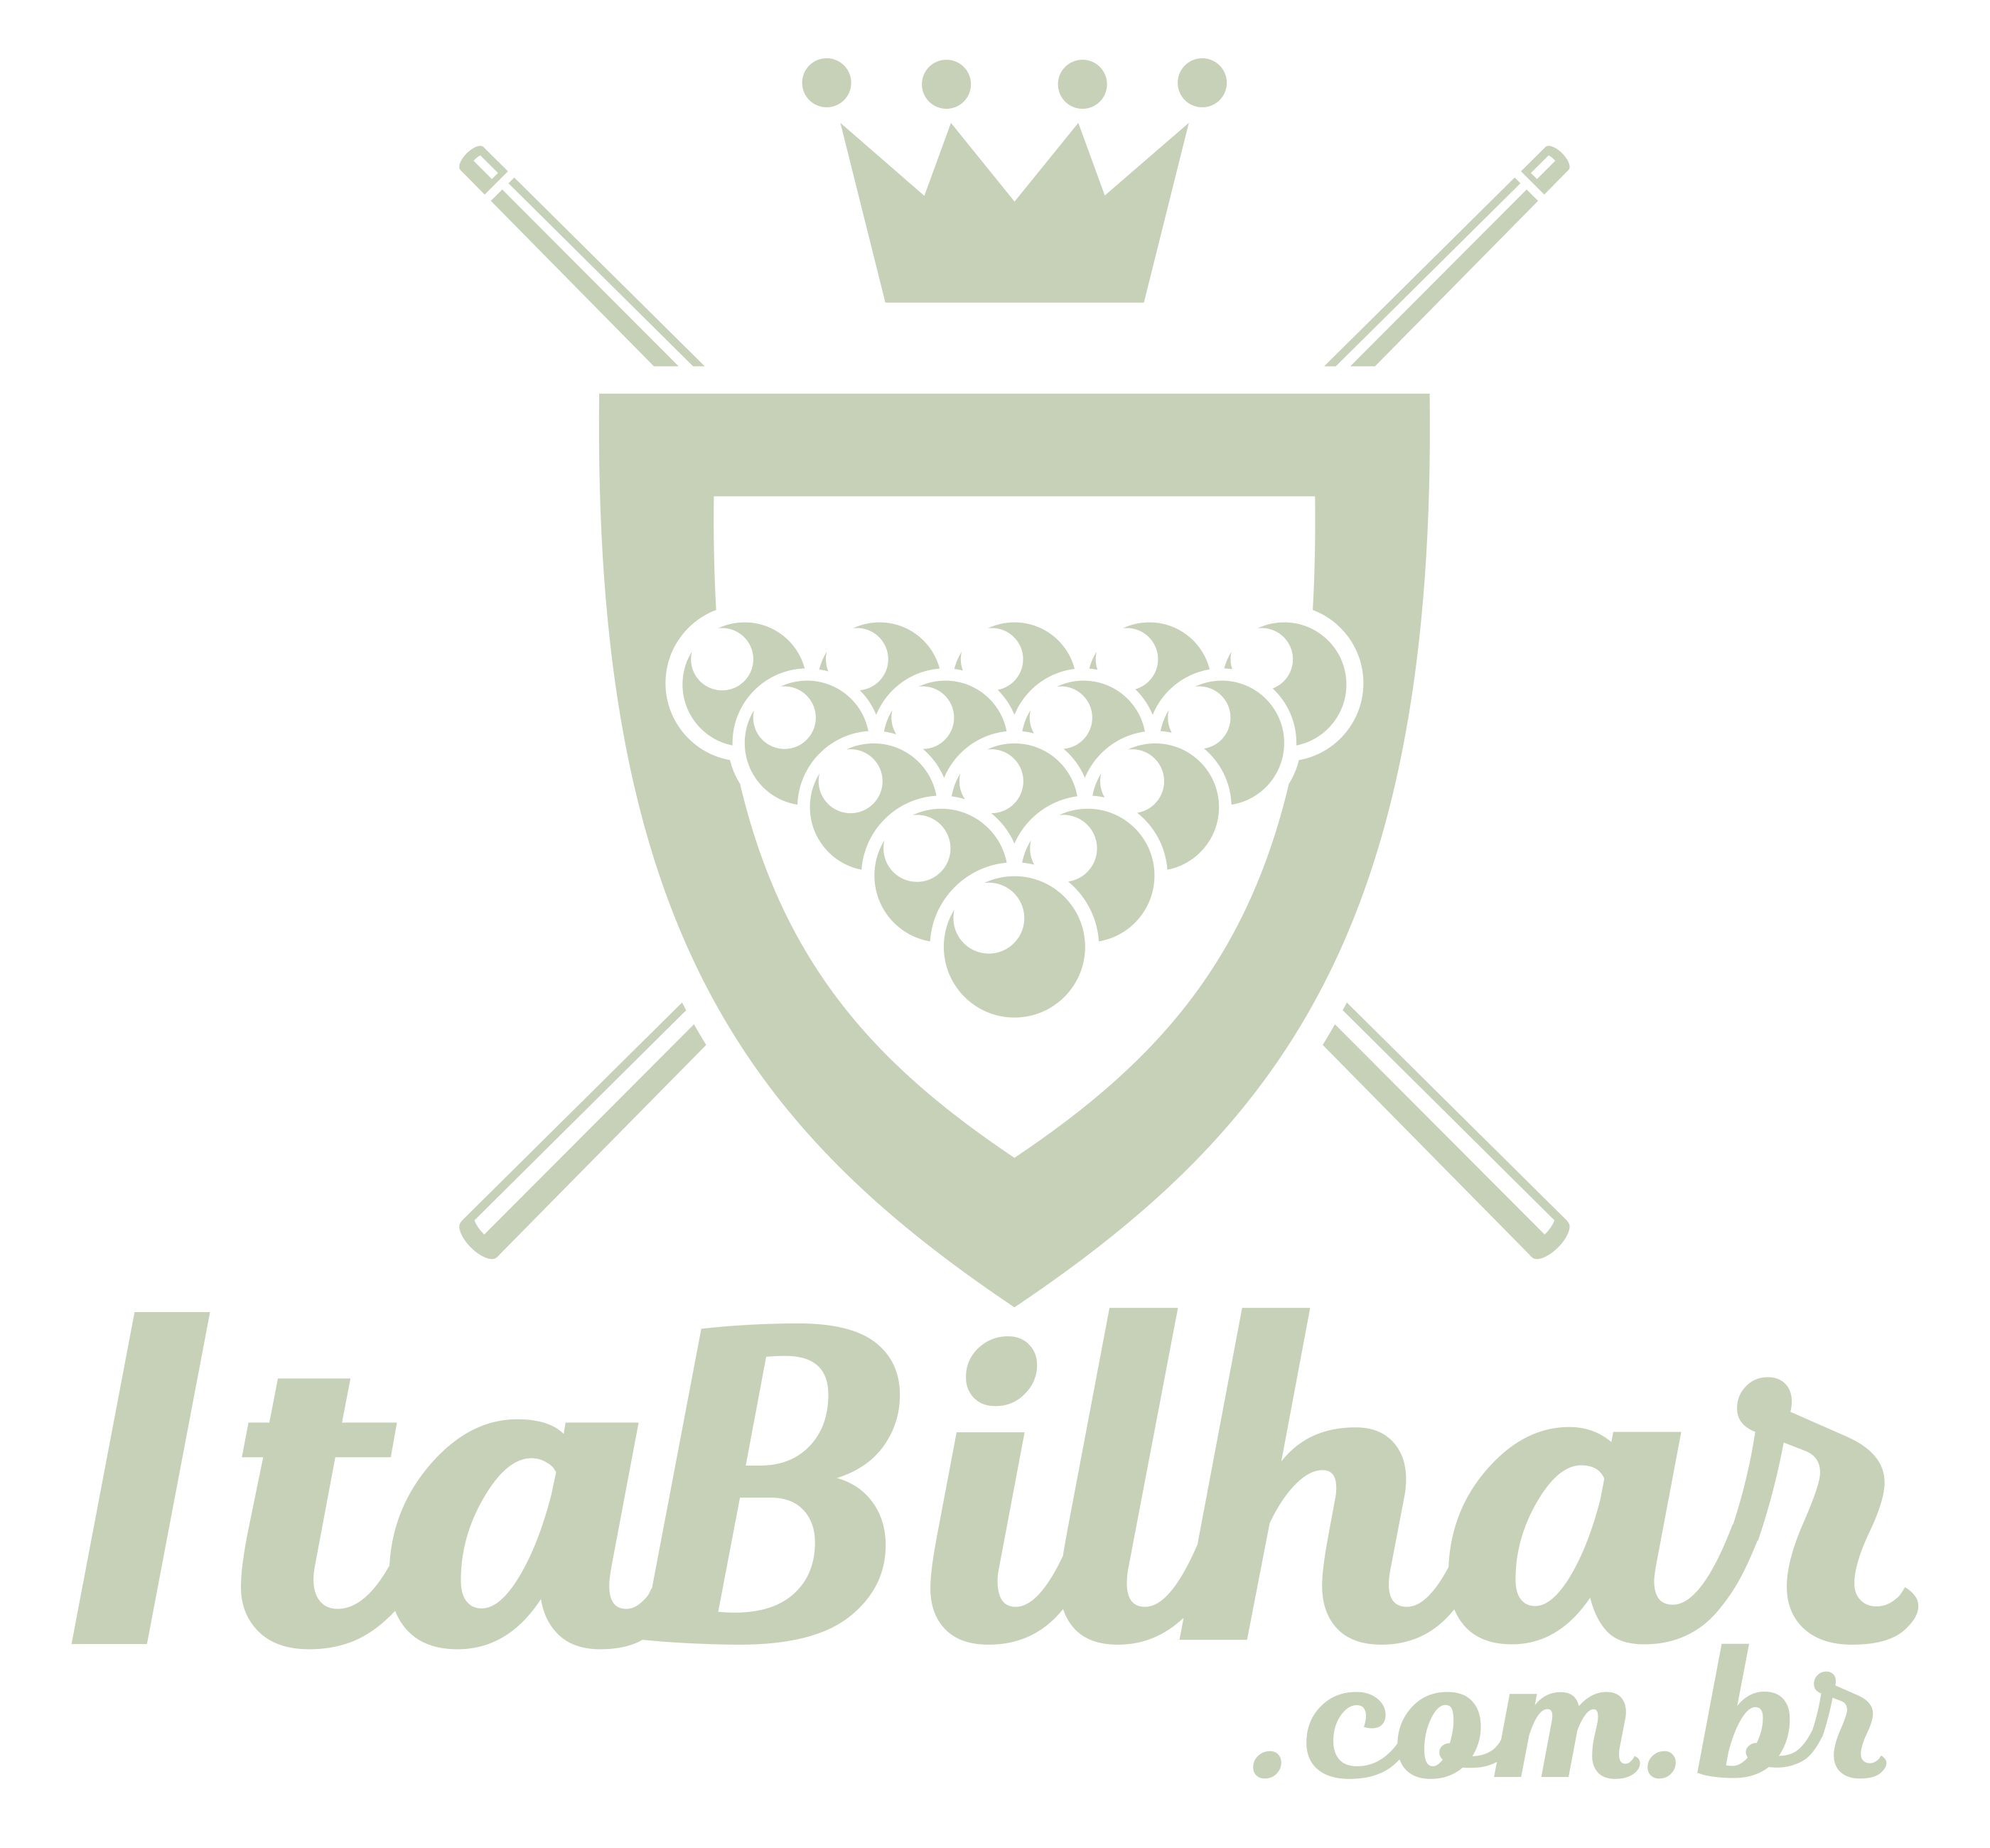 Ita Bilhar – Fábrica de mesas para jogos